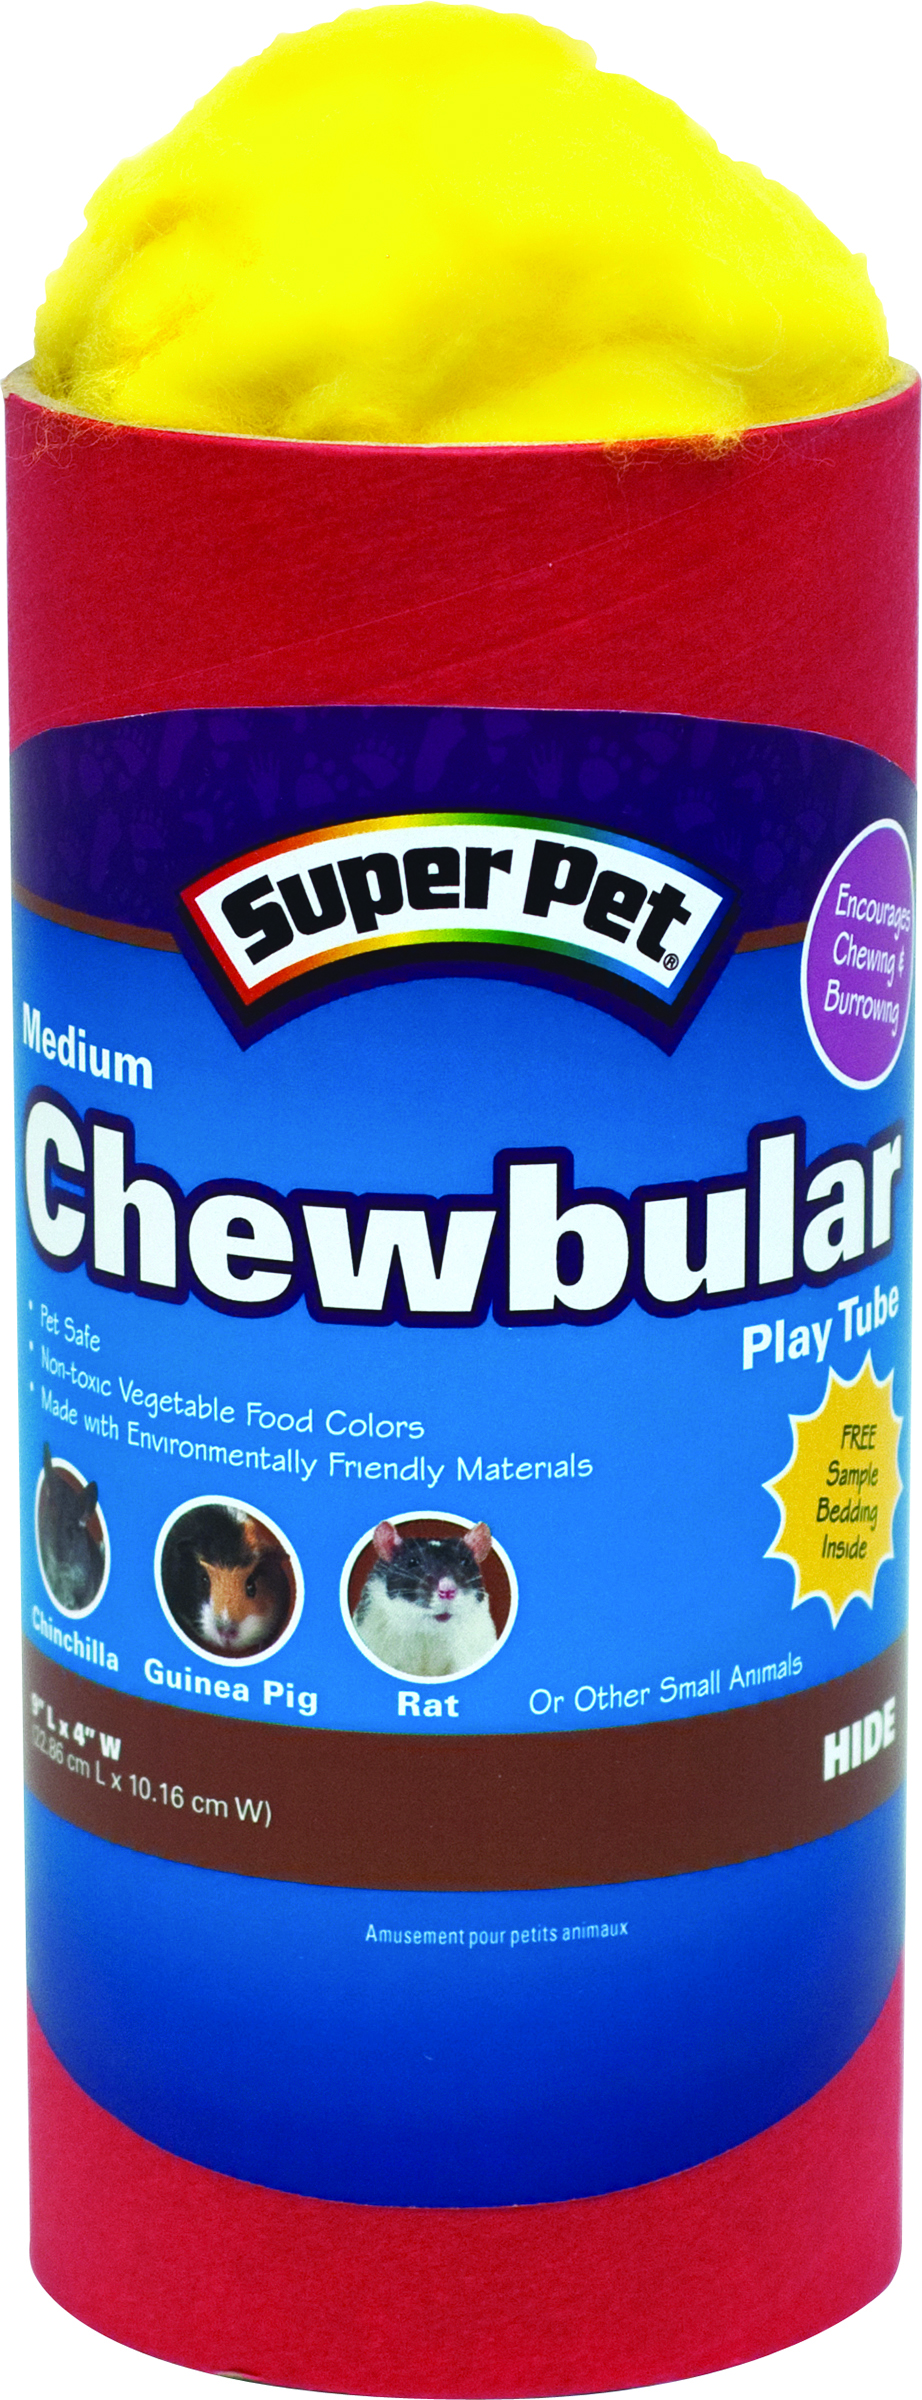 Chewbular Play Tube - Medium